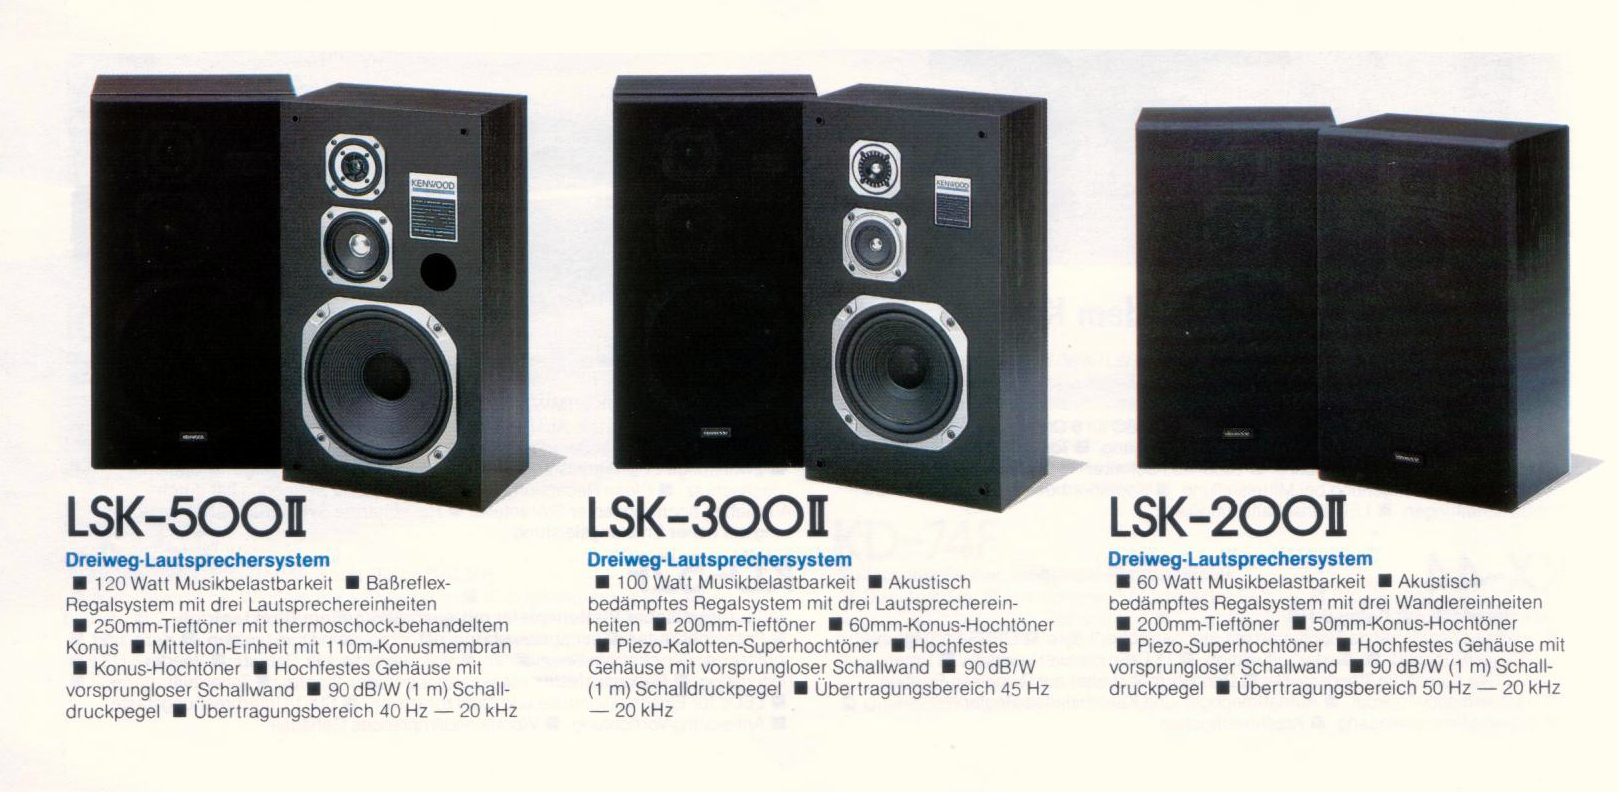 Kenwood LSK-200-300-500 II-Prospekt-1985.jpg